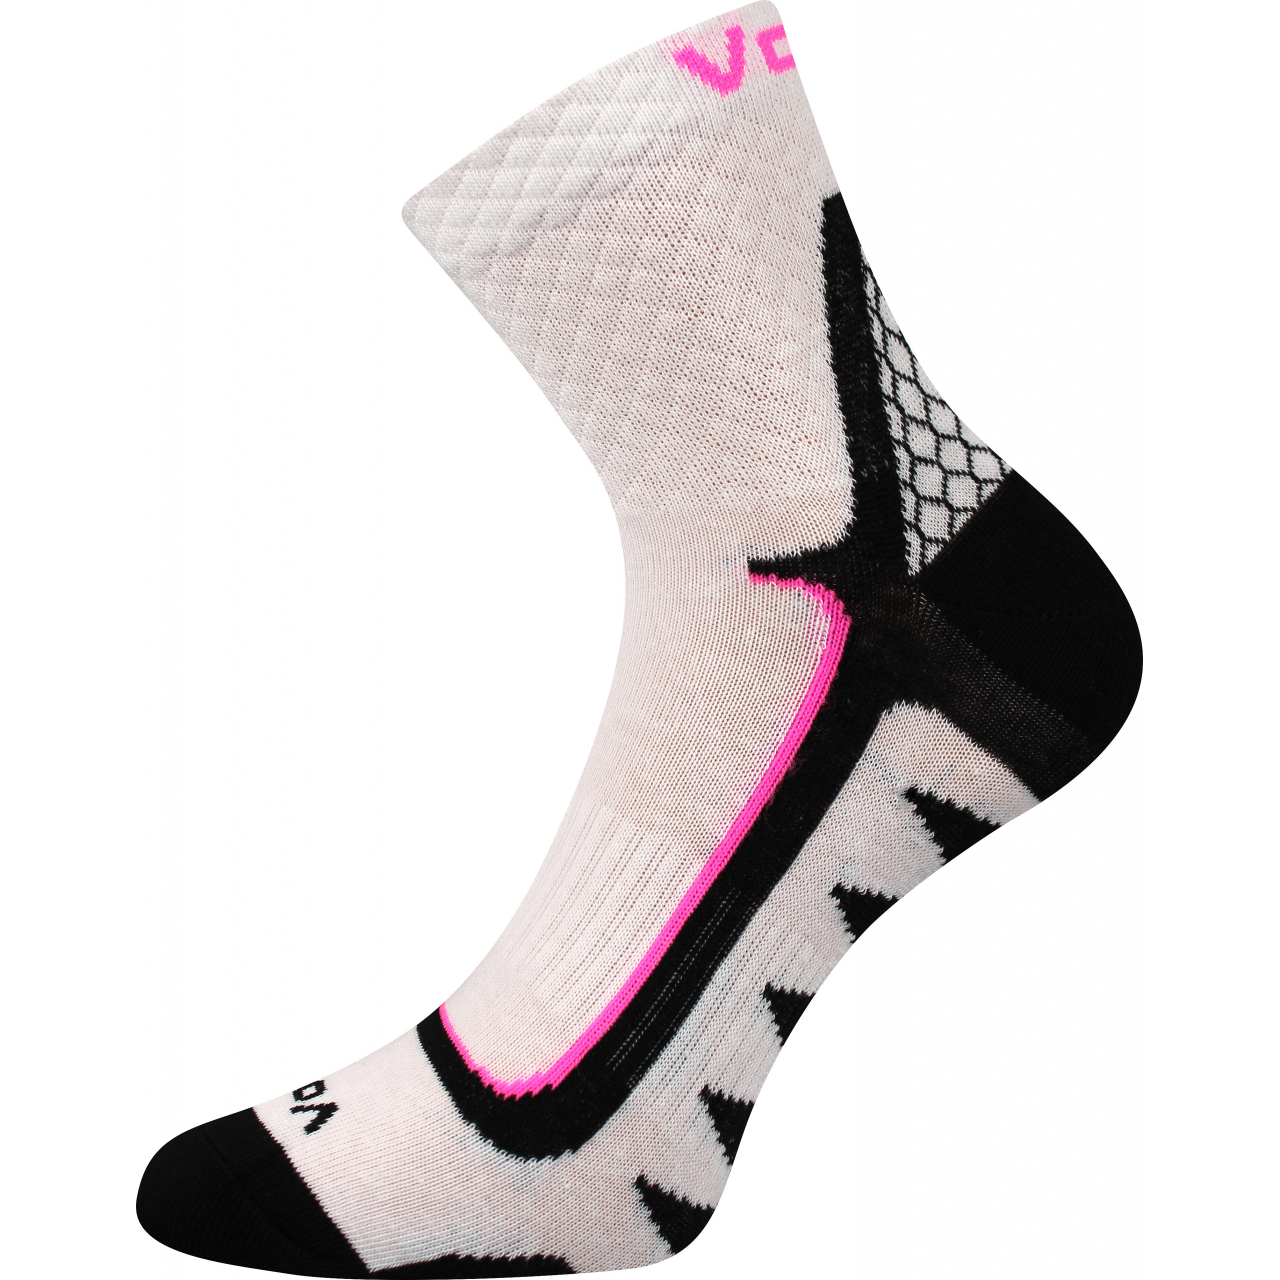 Ponožky sportovní unisex Voxx Kryptox - bílé, 35-38